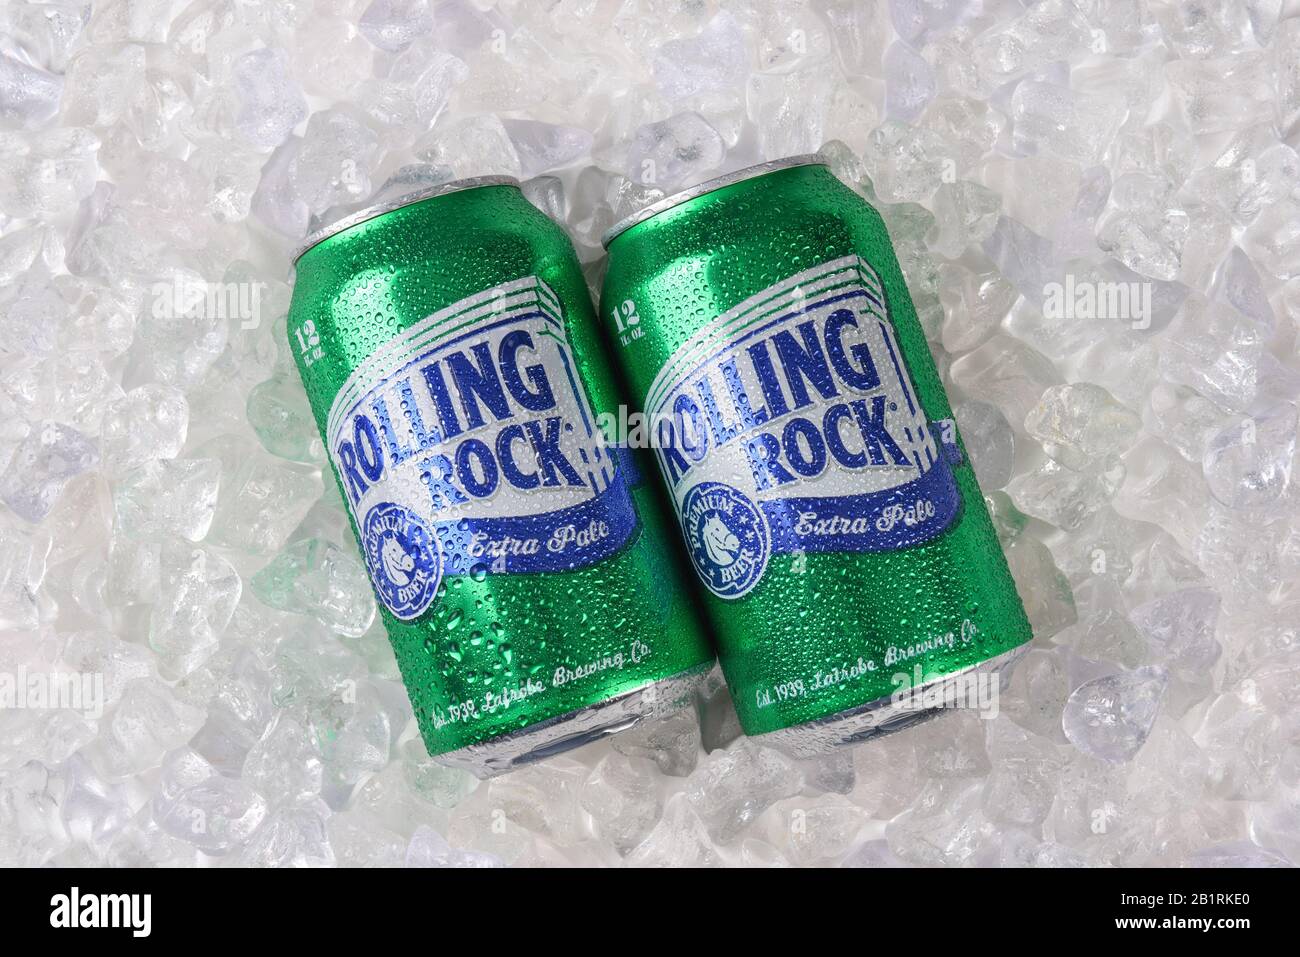 Irvine, KALIFORNIEN, 7. FEBRUAR 2018: Rolling Rock Extra Pale Beer. Zwei Dosen des amerikanischen Bieres auf Eis, das 1939 in Latrobe, Pennsylvania gegründet wurde. Stockfoto